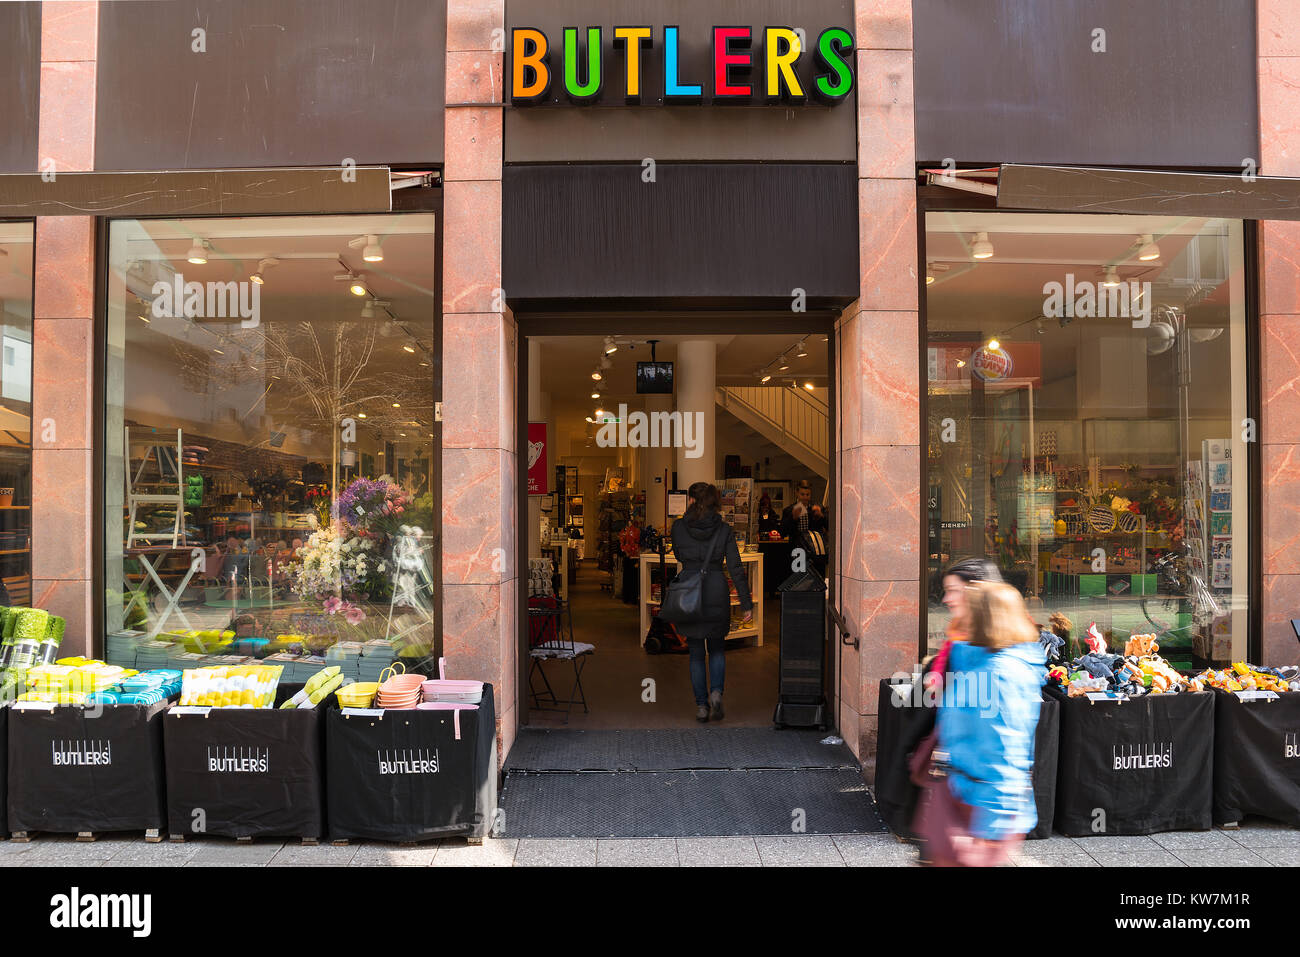 Ingresso al negozio Butlers, Butlers è un negozio di accessori per la casa a Francoforte, Germania. Foto Stock